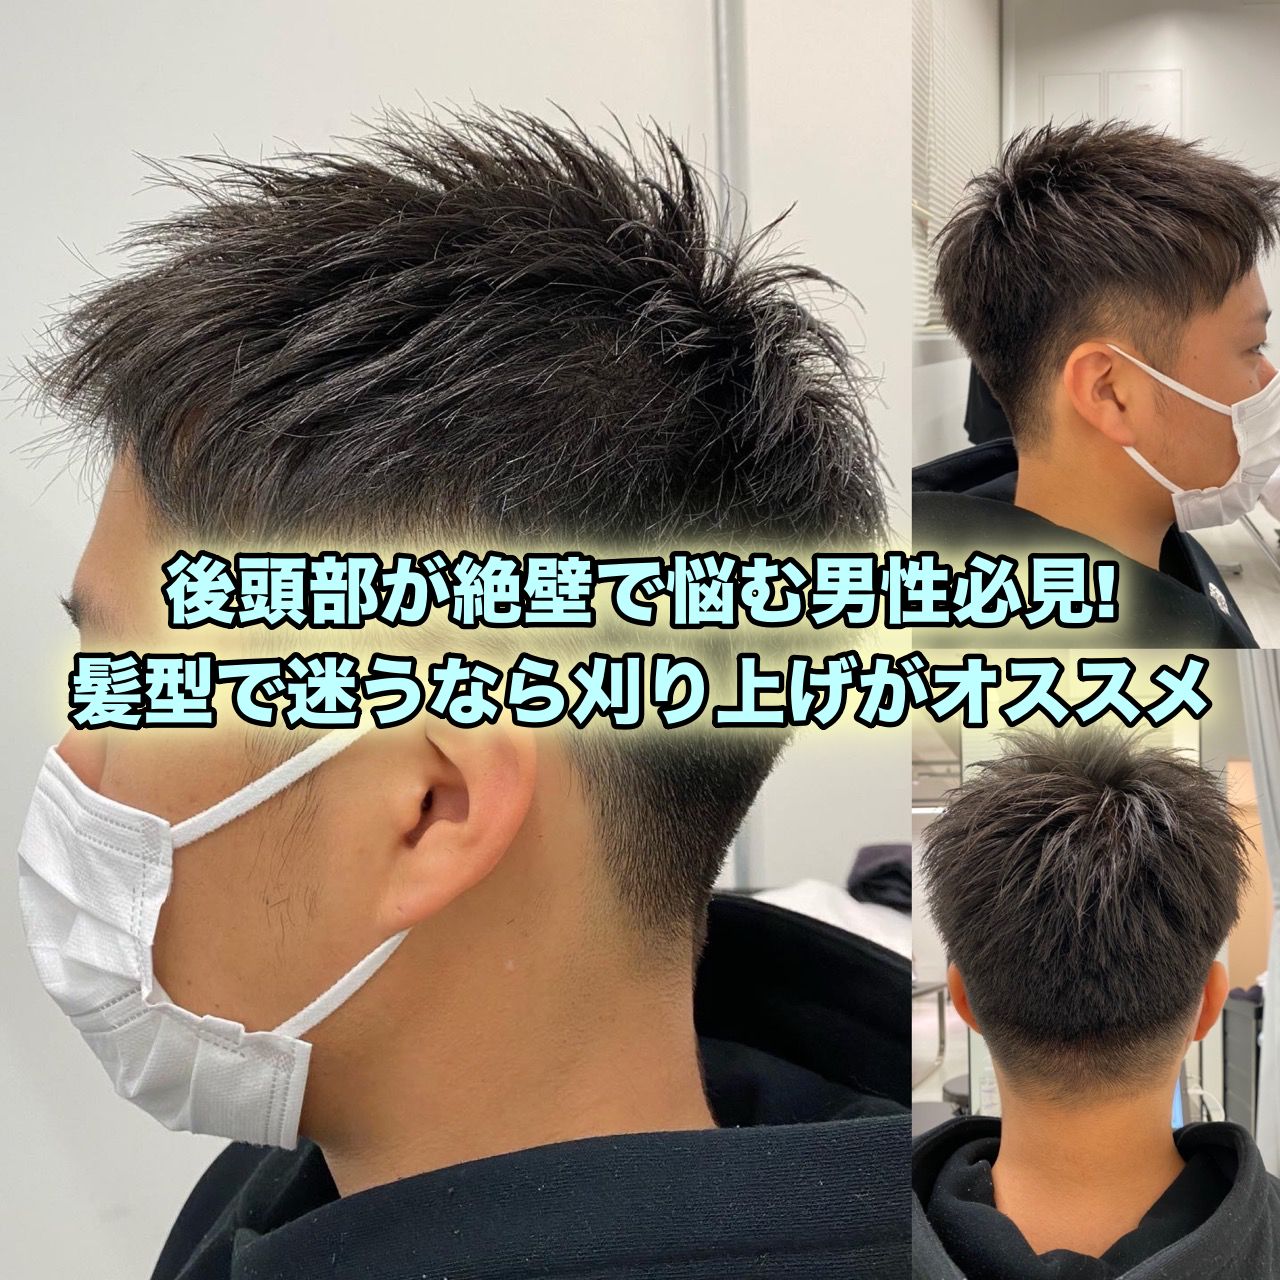 後頭部の絶壁は髪型で解決 頭の形に悩むメンズは刈り上げがオススメ Ryohei Kato